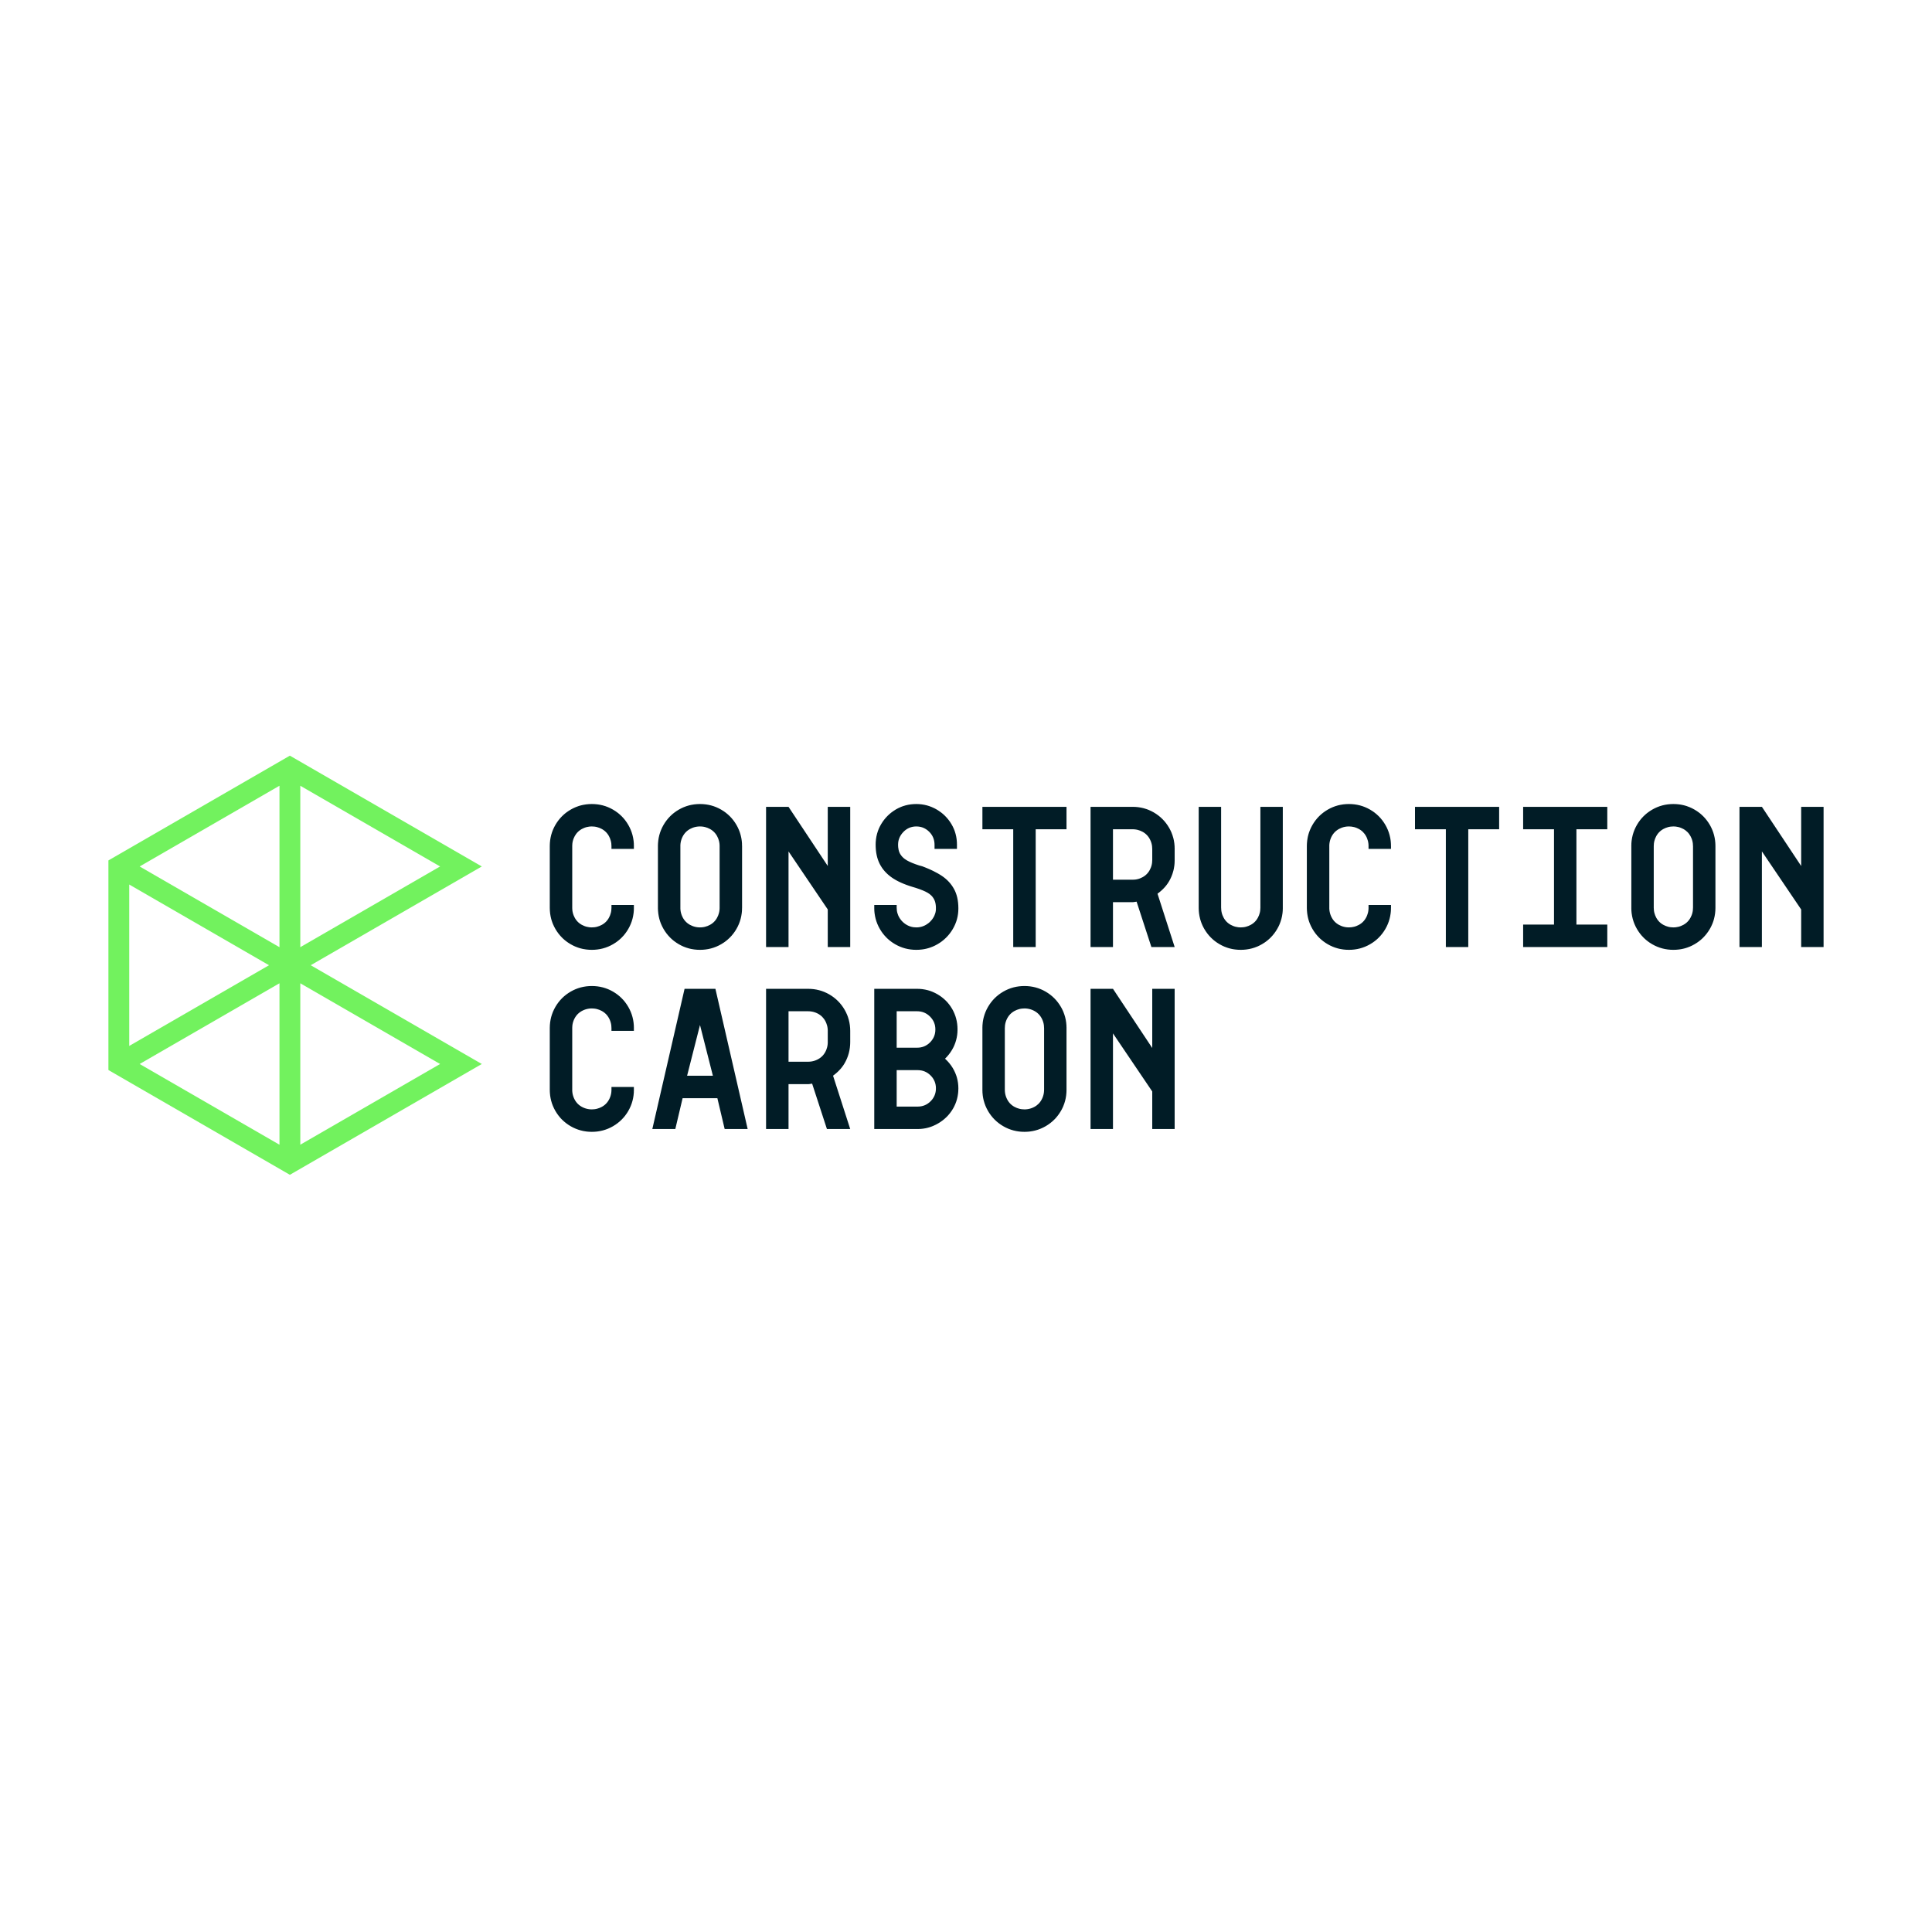 Construction Carbon